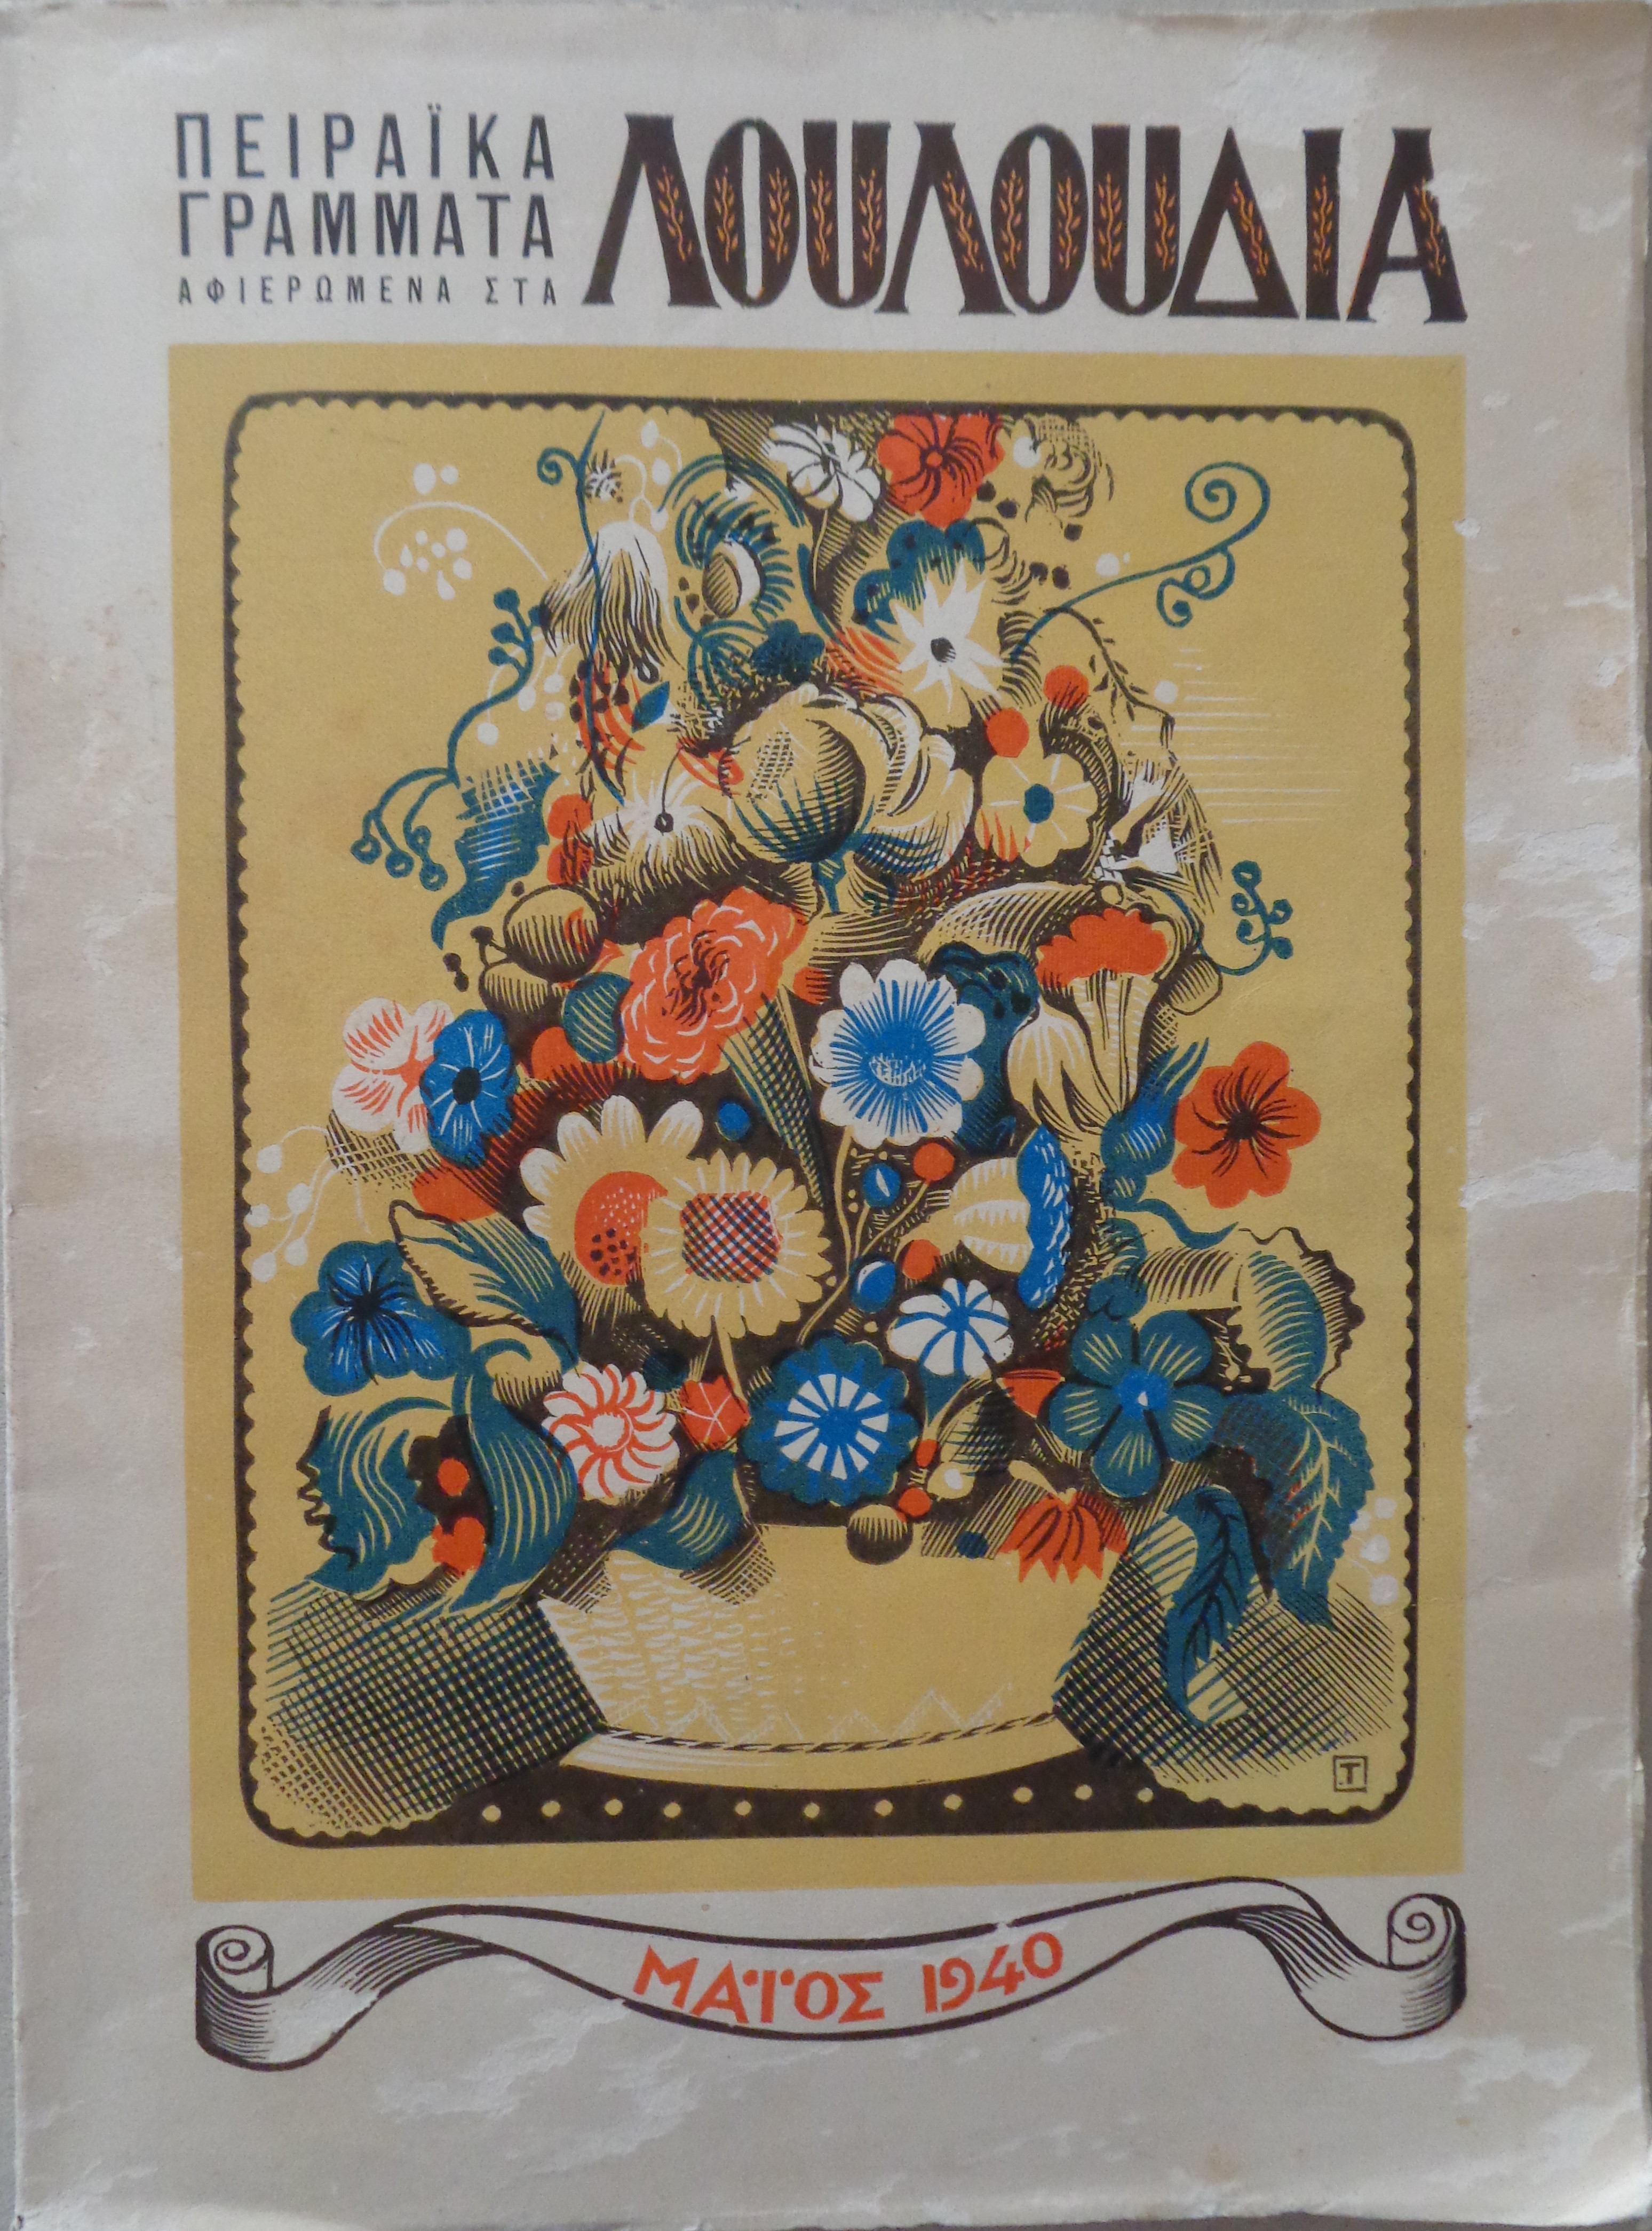 ΤΑΣΣΟΣ ΑΛΕΒΙΖΟΣ   ΛΟΥΛΟΥΔΙΑ  Πειραϊκά γράμματα αφιερωμένα στα λουλούδια  Χρόνος Α’, τεύχος 2ο, Μάϊος 1940 Η ΣΥΛΛΕΚΤΙΚΗ ΠΡΩΤΗ ΕΚΔΟΣΗ 